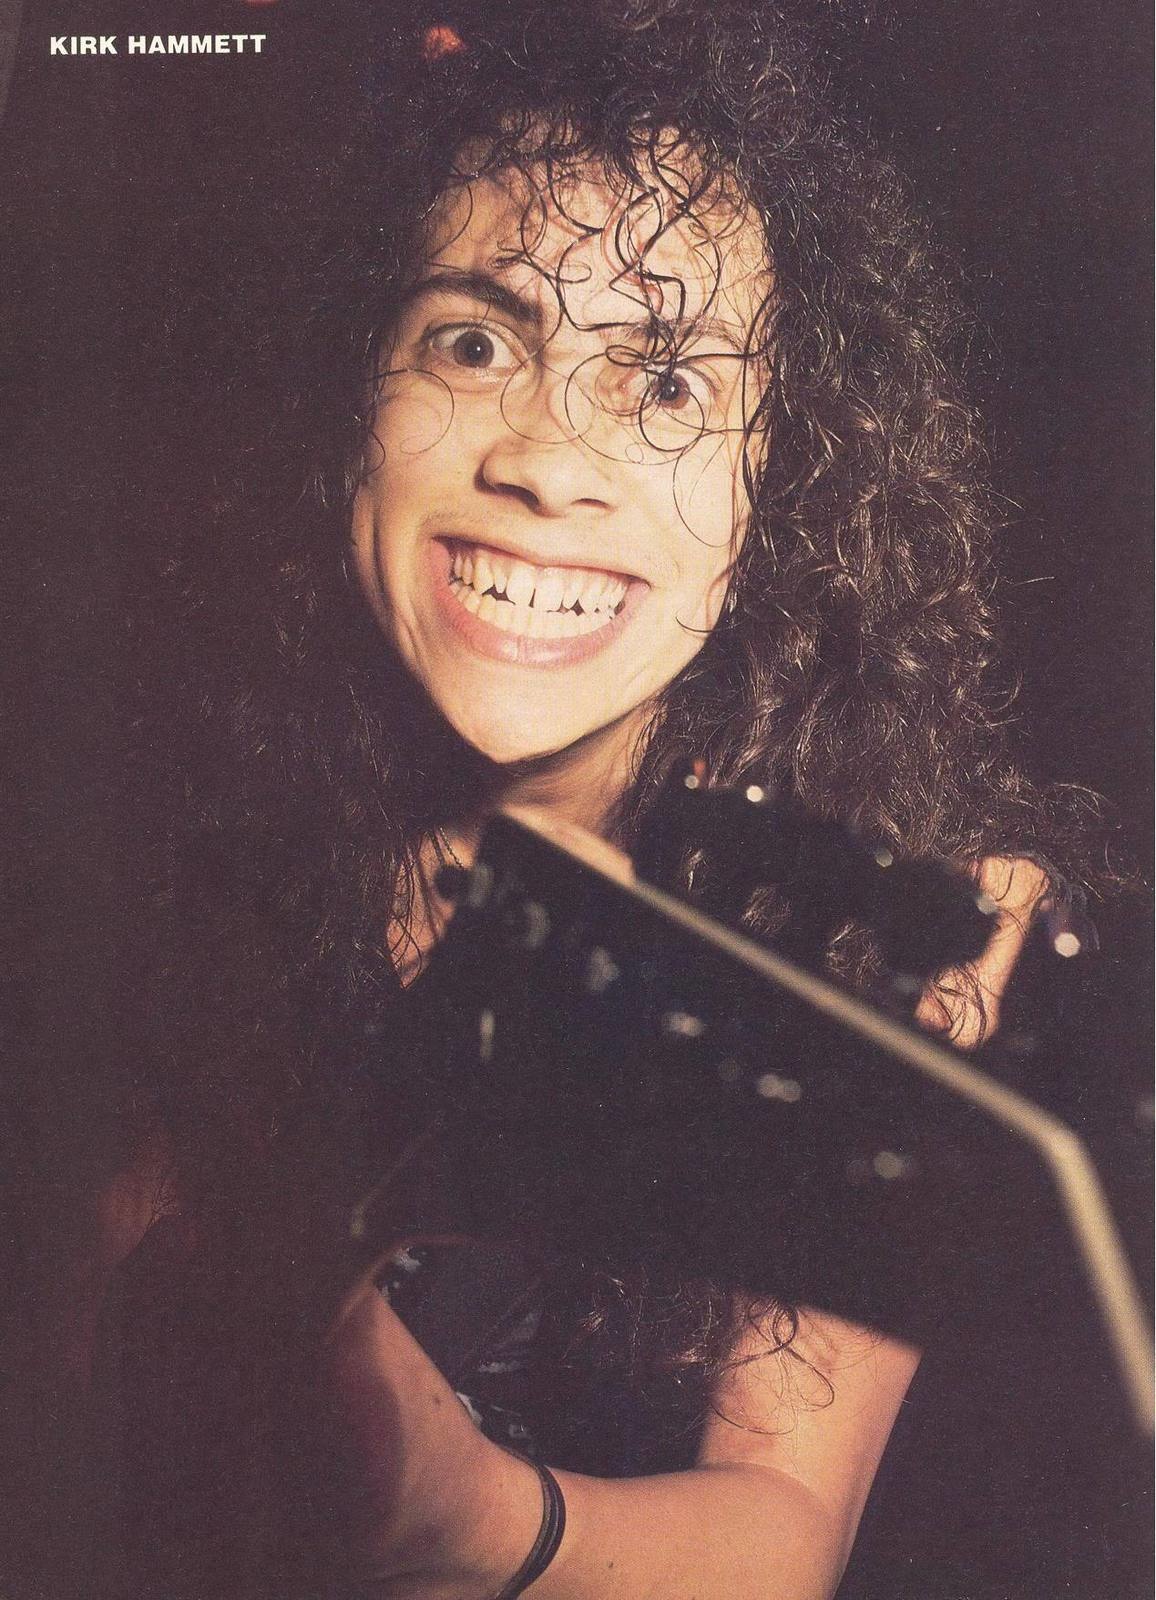 Kirk Hammett, Metallica - Kirk Hammett Young Teeth , HD Wallpaper & Backgrounds